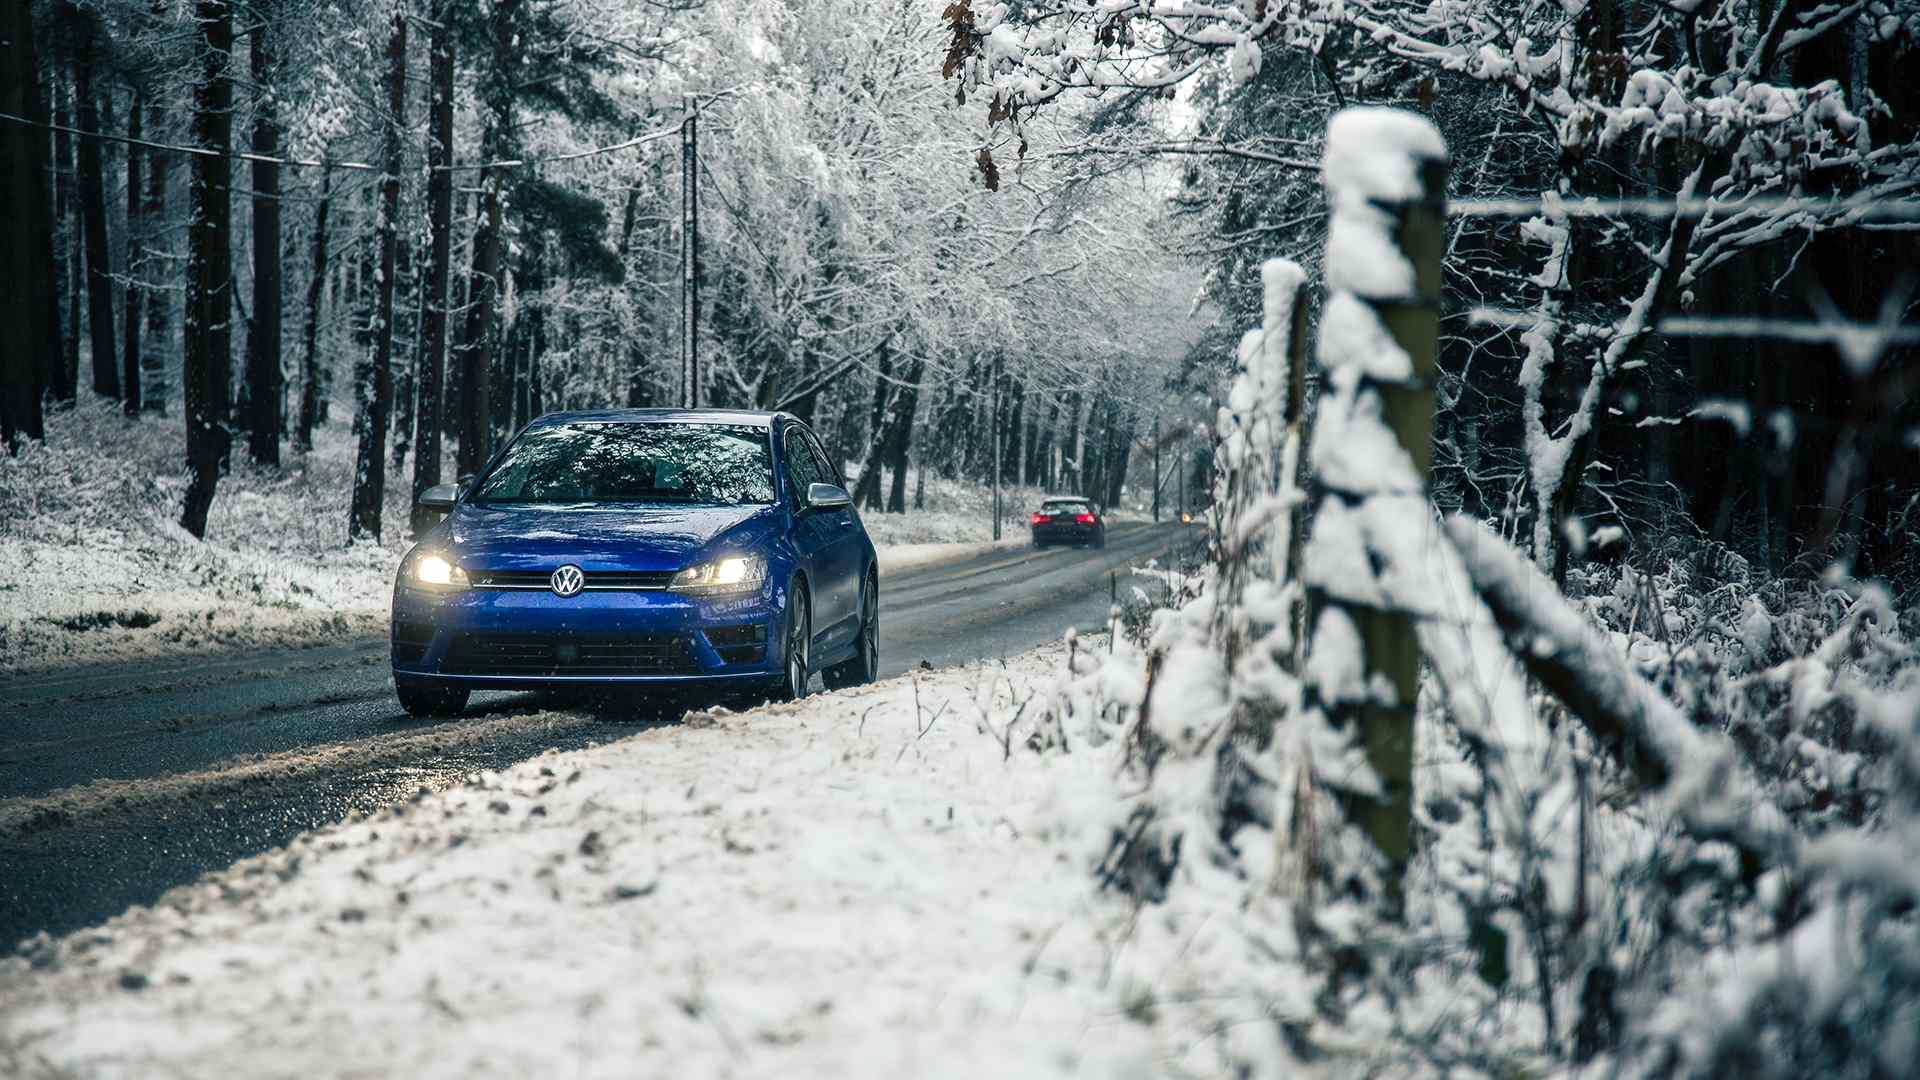 Fahren ohne Winterreifen: Ein Auto mit Winterreifen steht auf einer verschneiten Straße, bereit zum Losfahren.